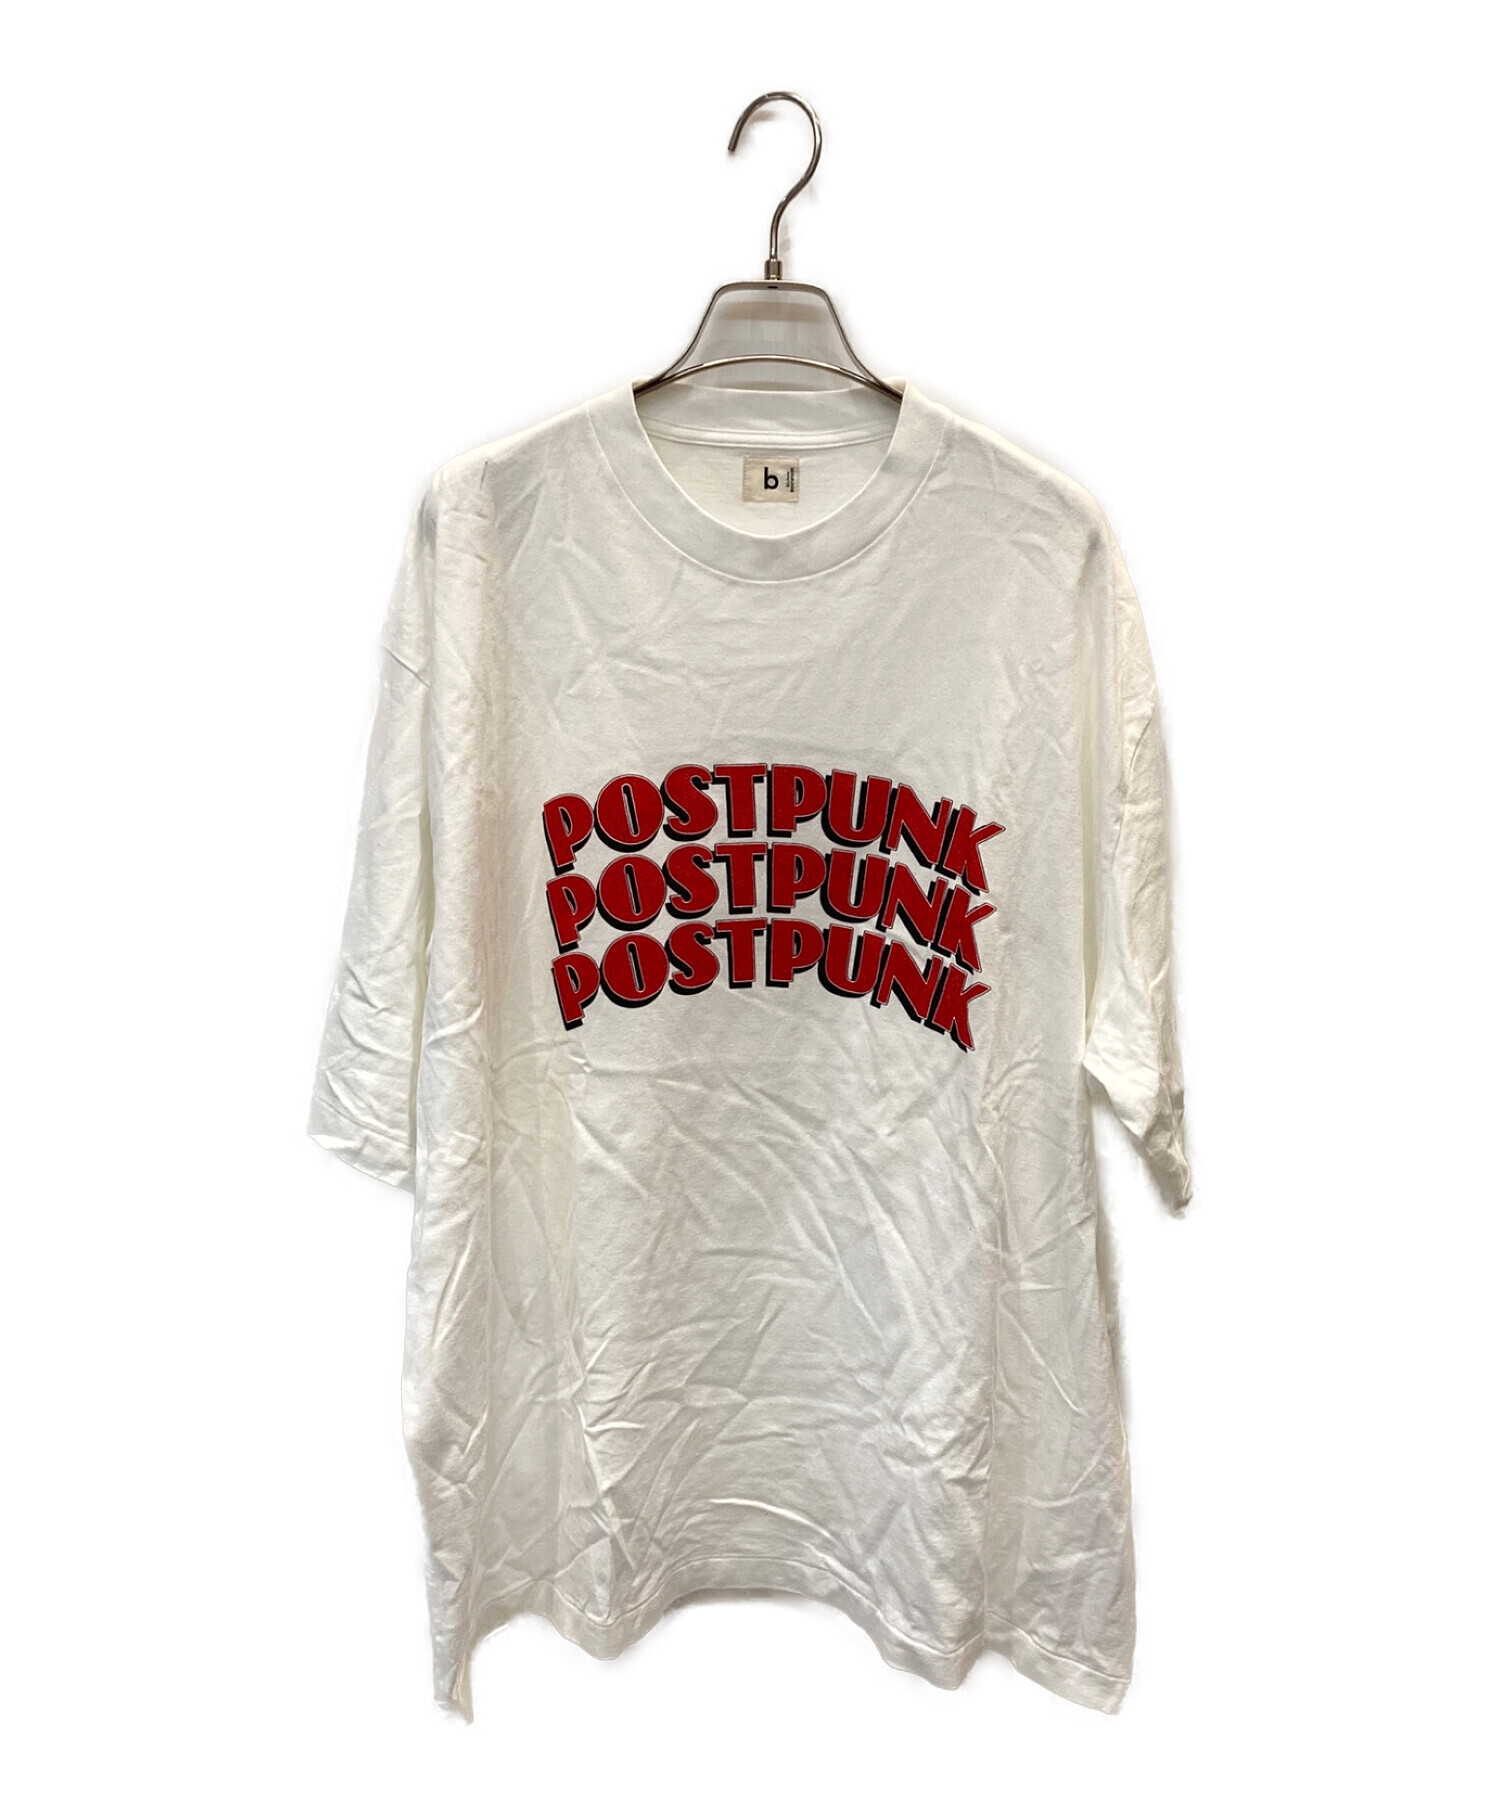 ブラームス postpunk Tシャツ blurhms 4-www.mwasaving.com